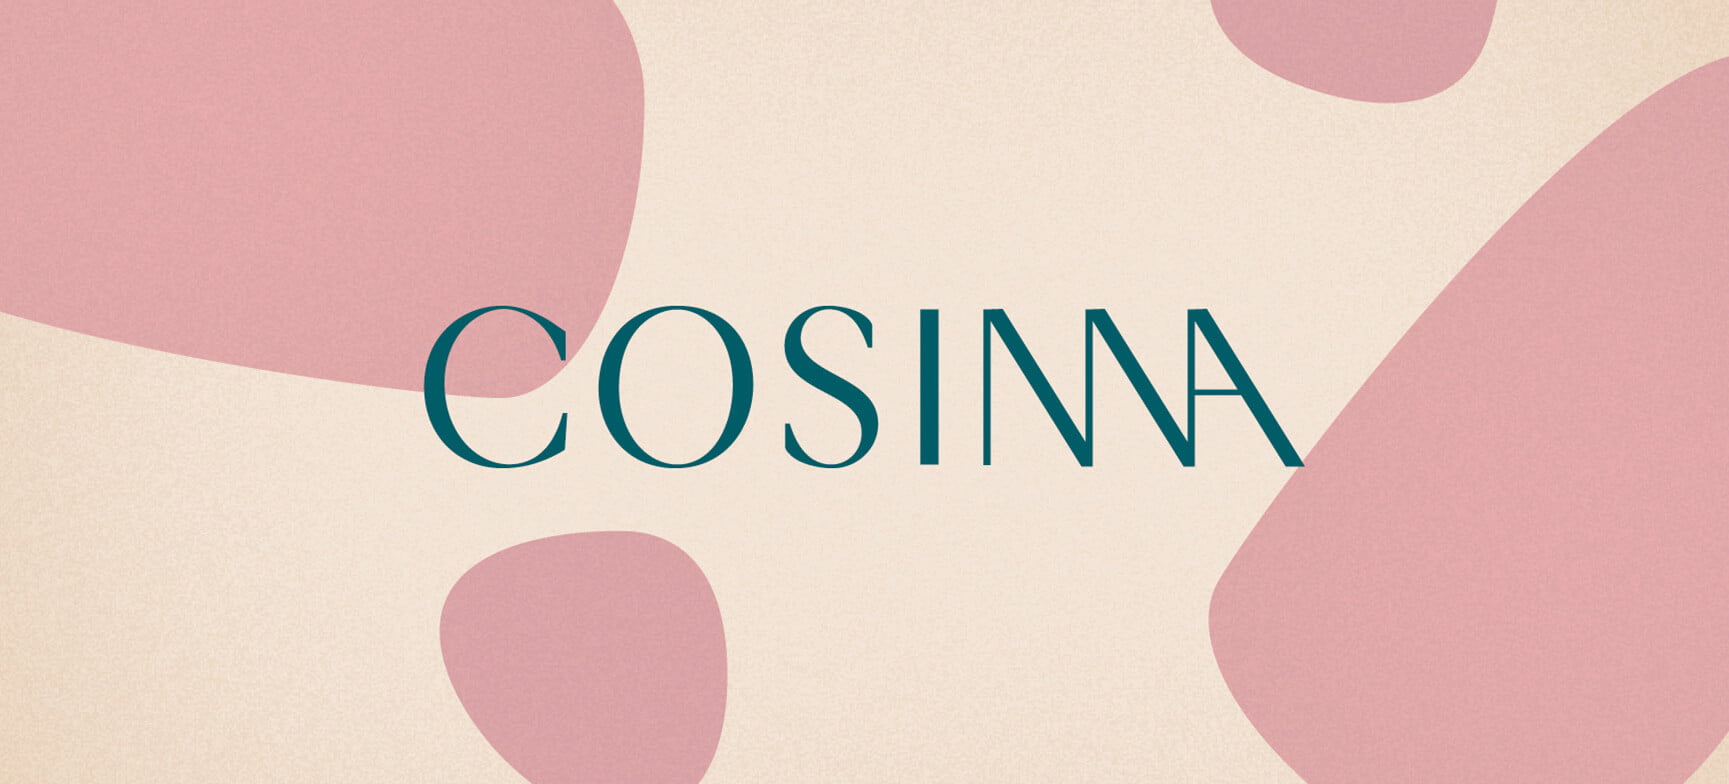 Cosima Branding